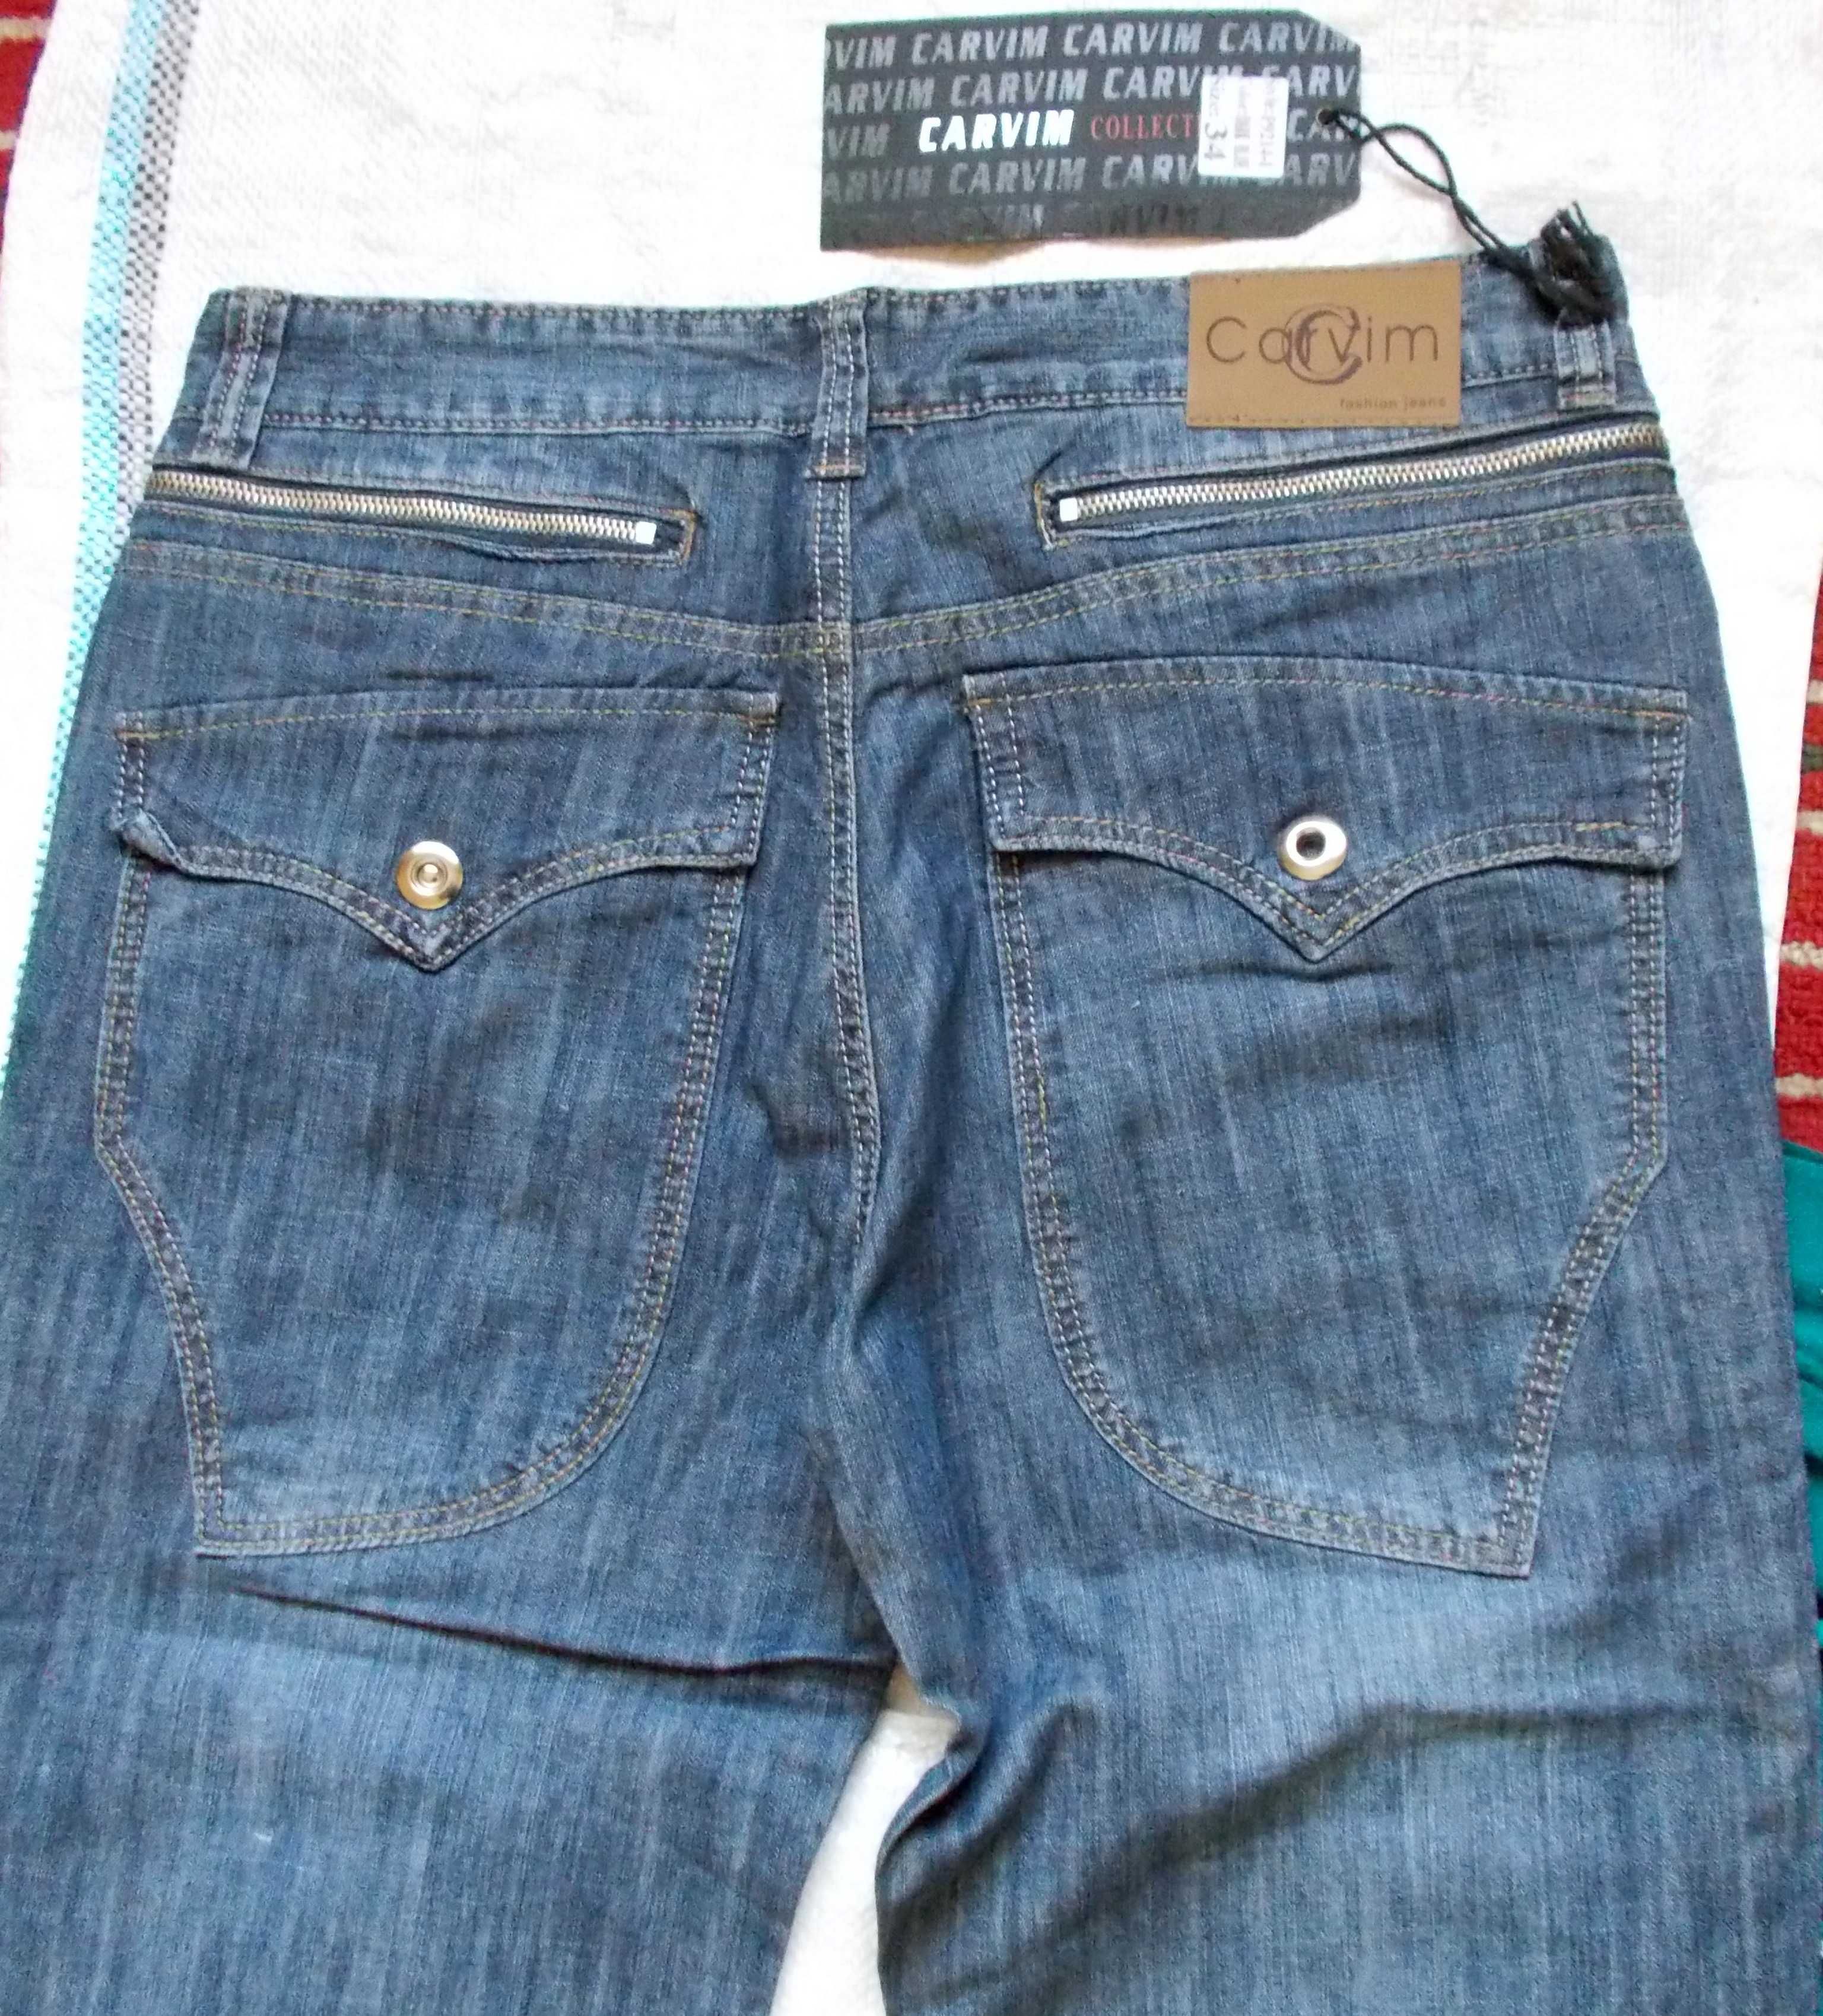 джинсы с множеством карманов,88 см.пояс.Новые